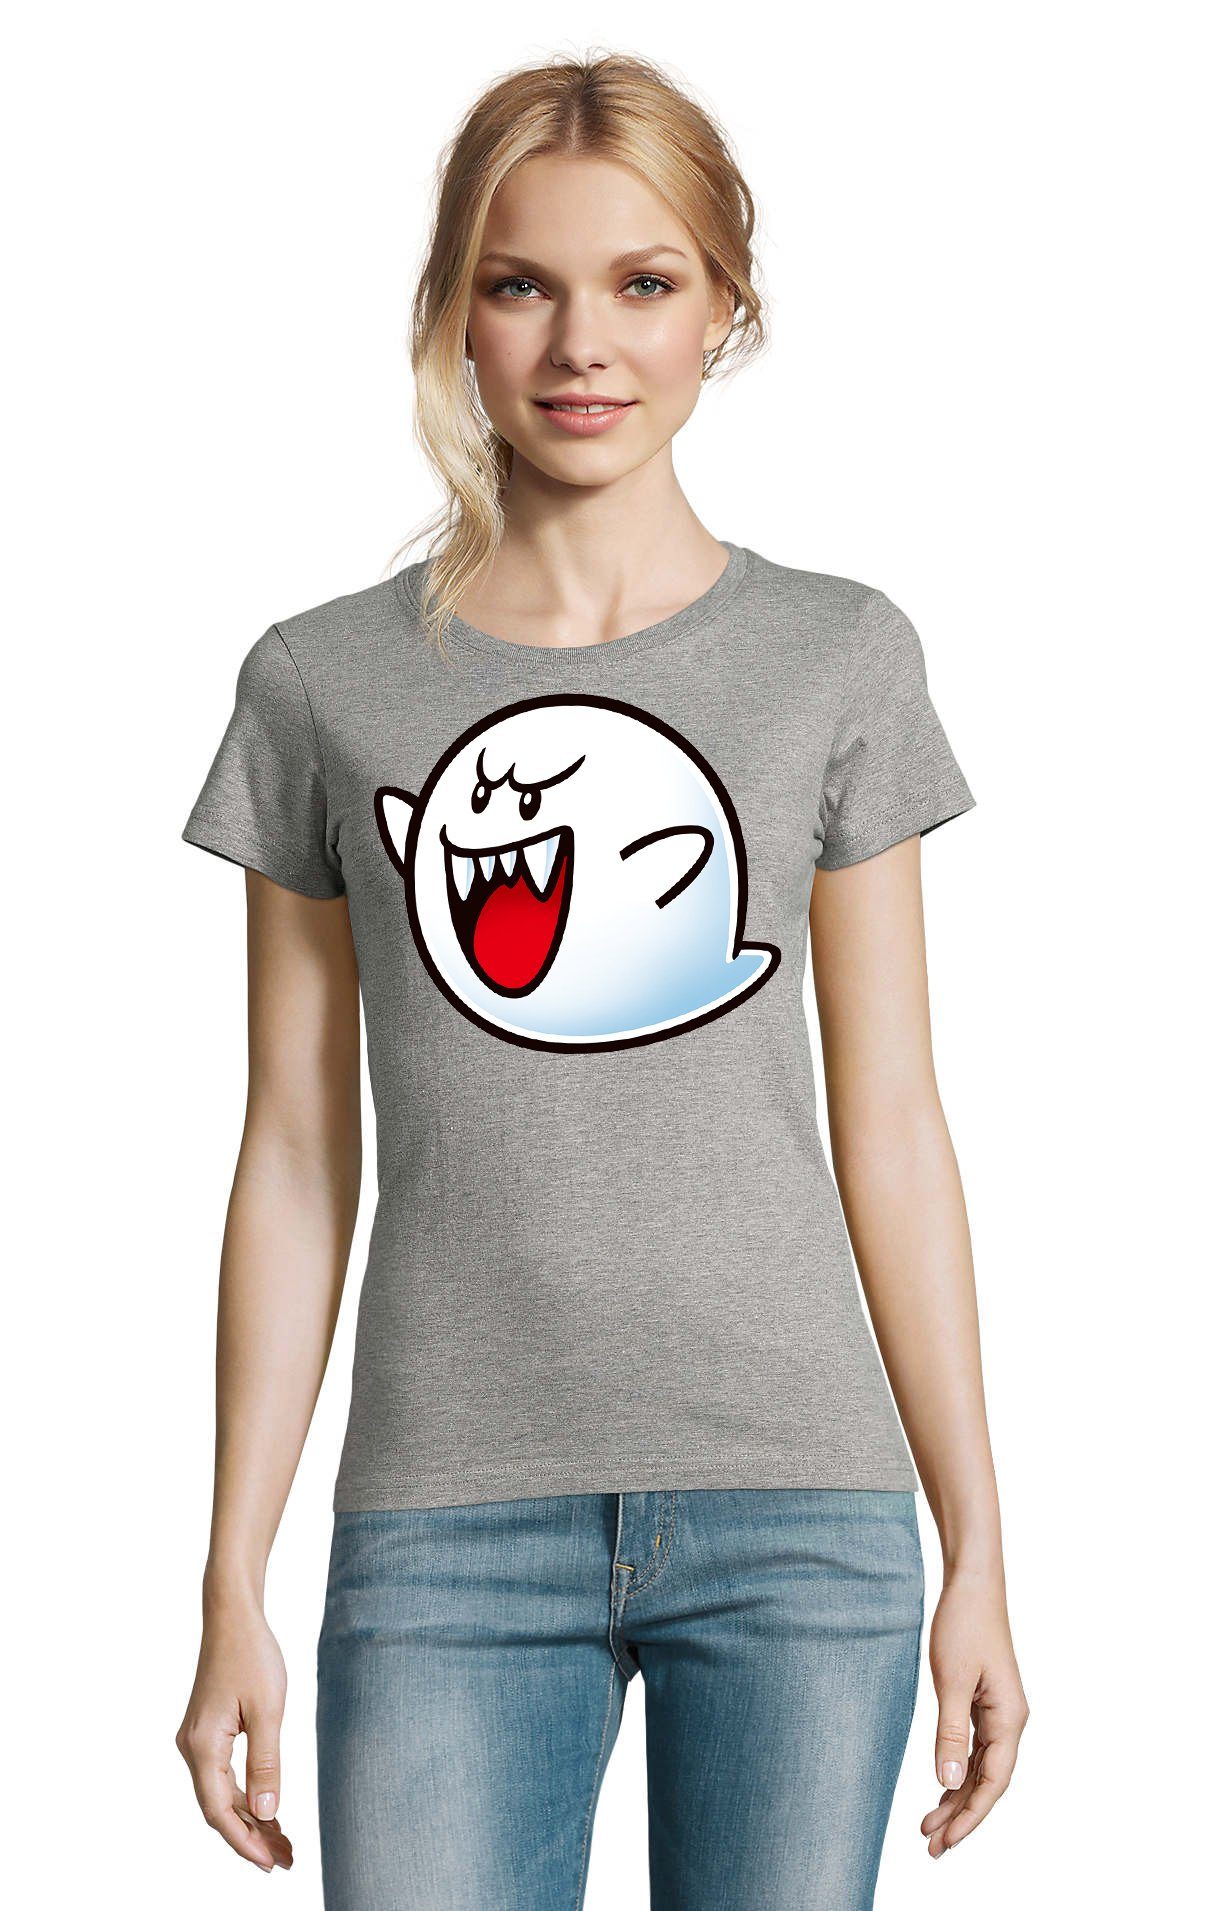 Blondie & Brownie T-Shirt Damen Grau Geist Gespenst Mario Konsole Nintendo Boo Super